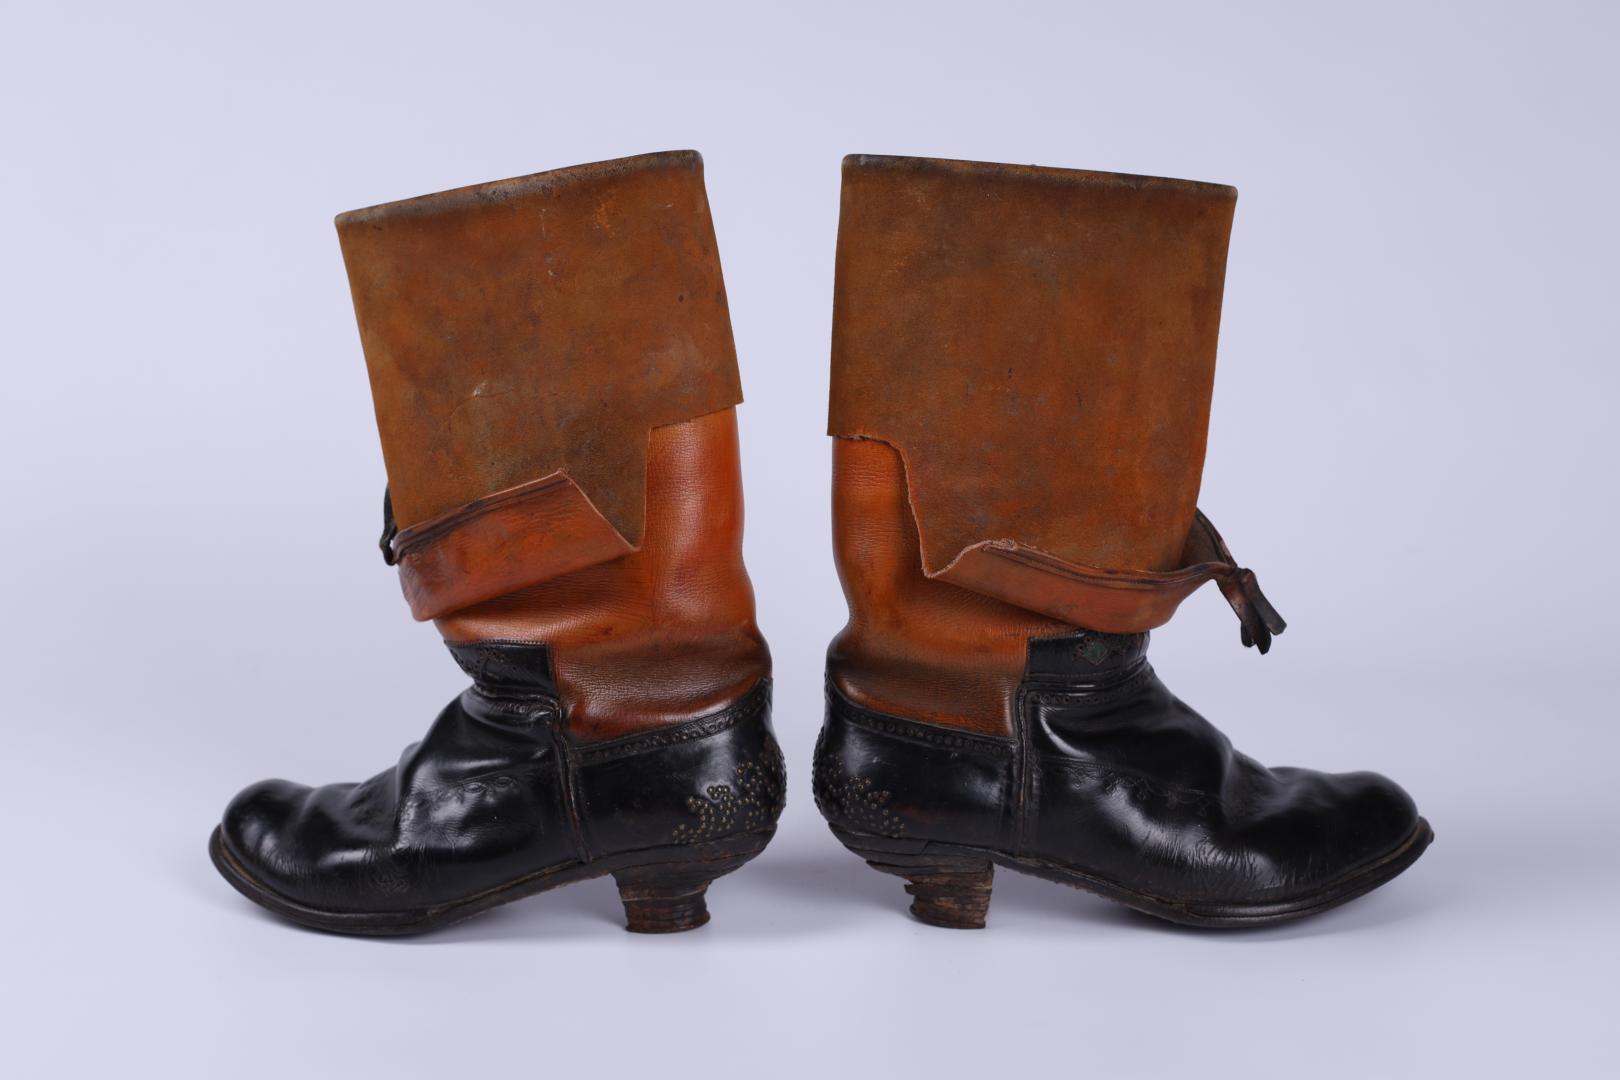 Marigold' women's boots